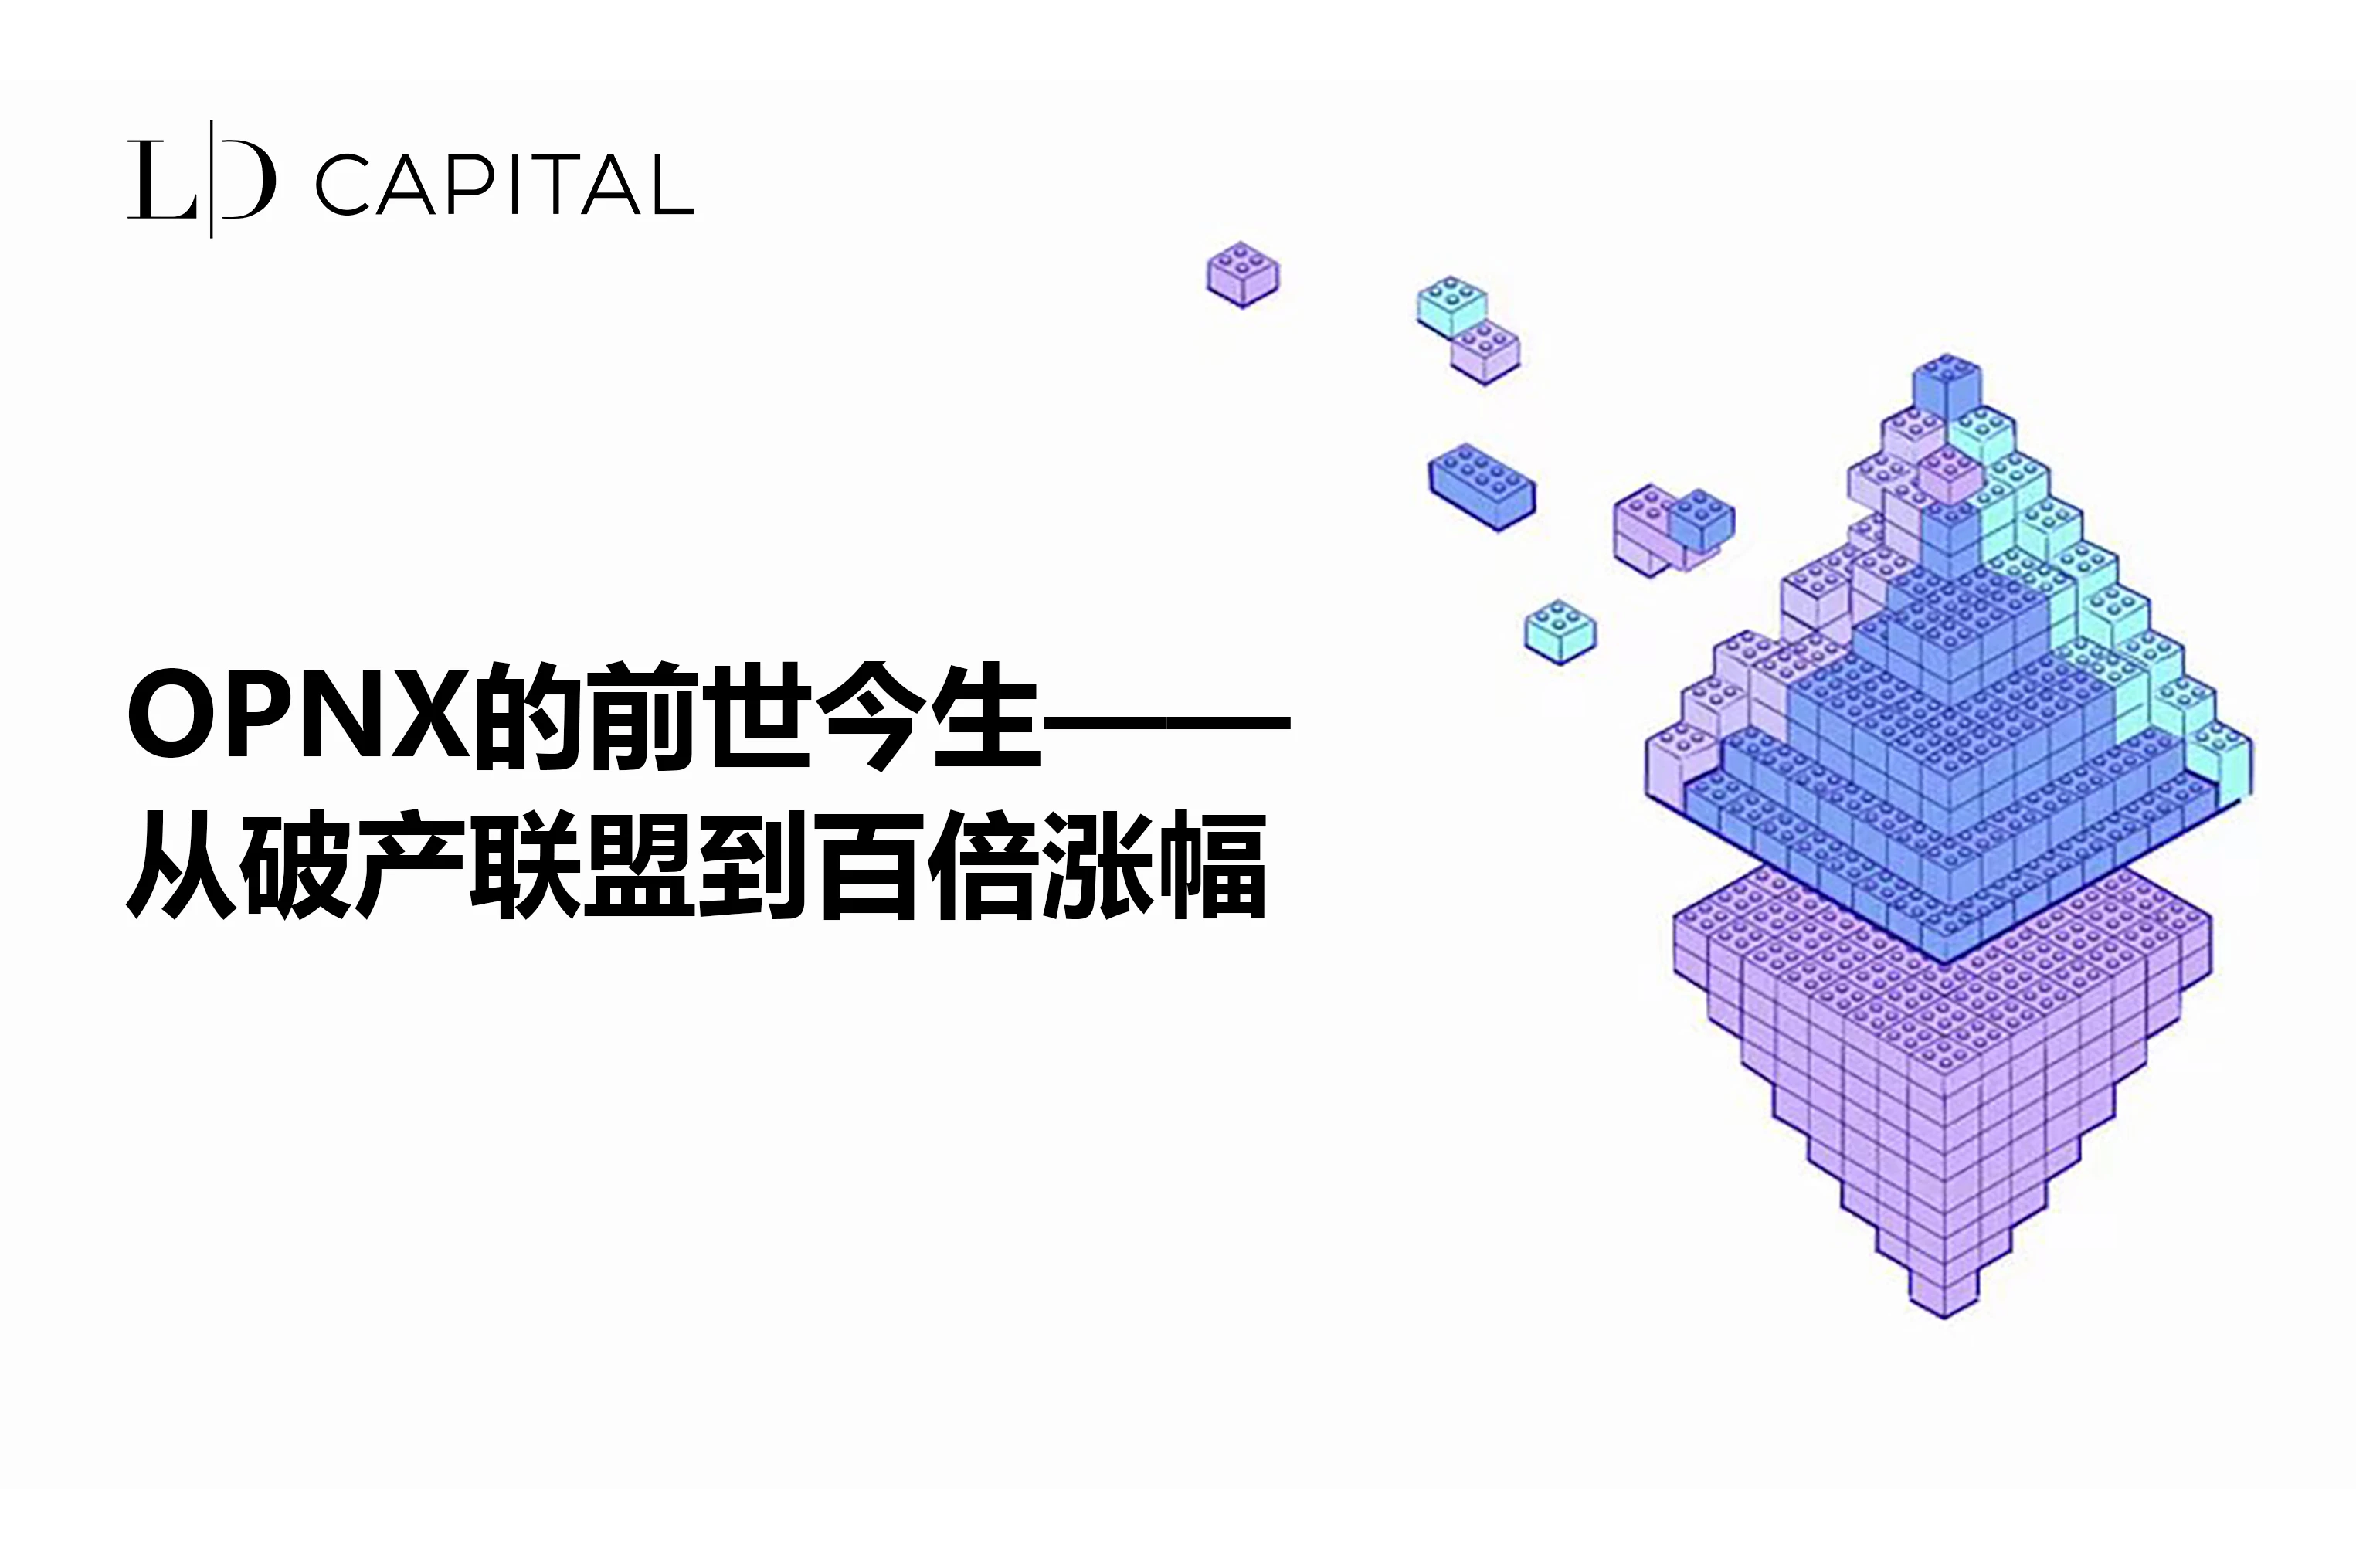 LD Capital：OPNX的前世今生，从破产联盟到百倍涨幅